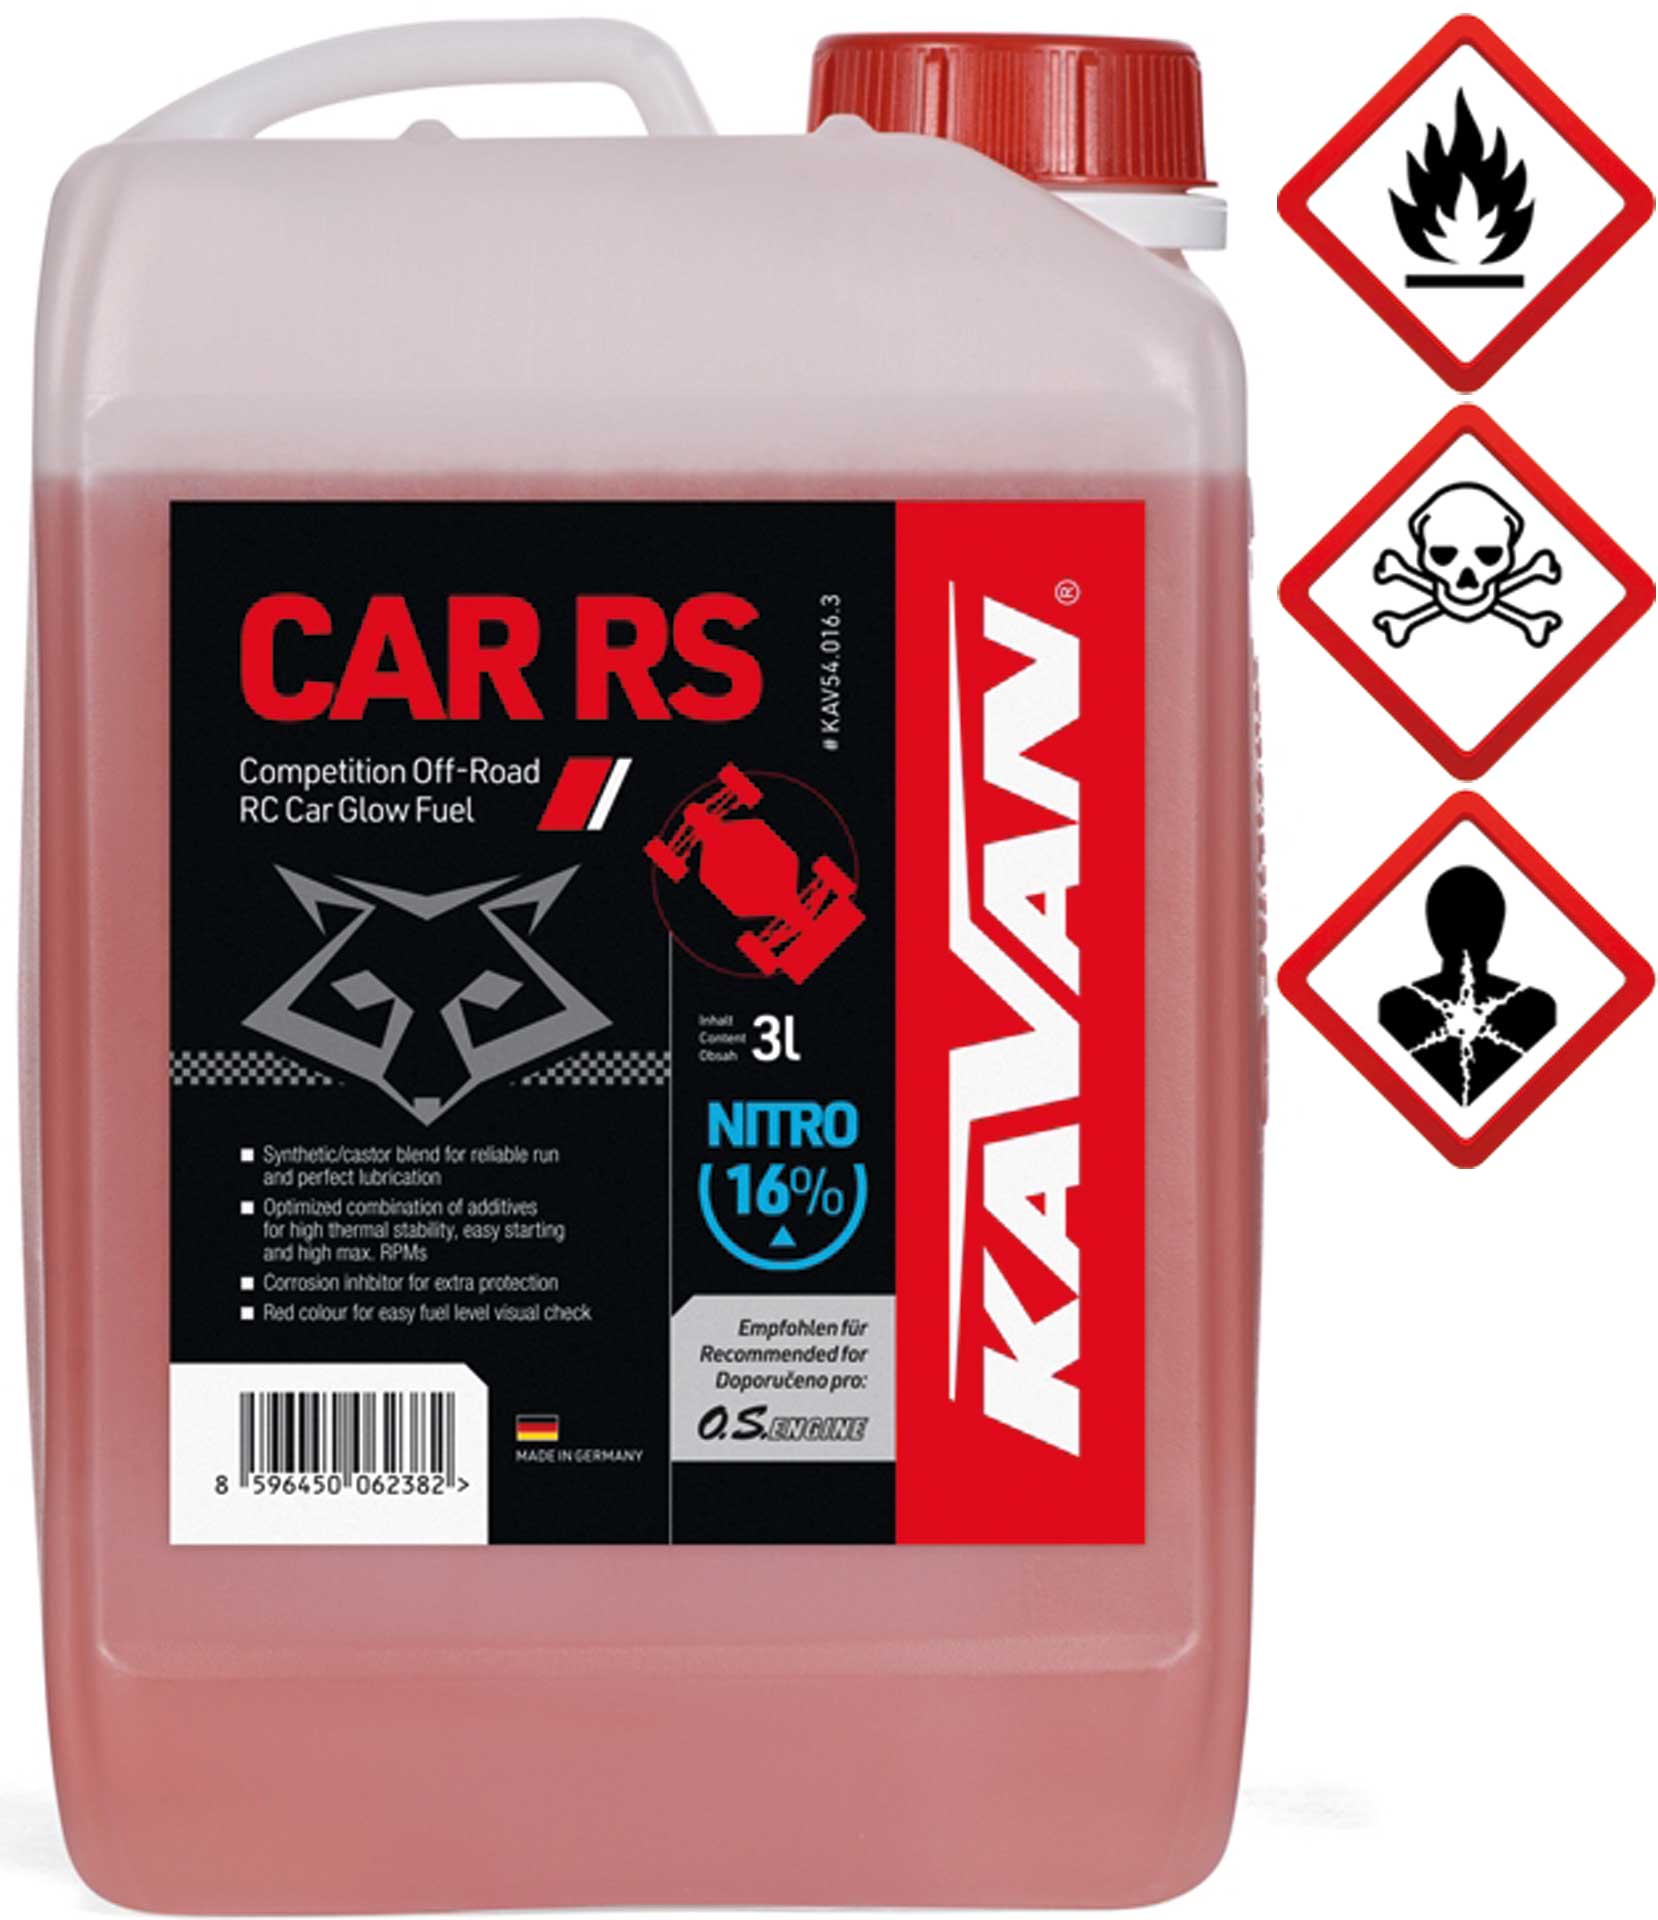 KAVAN Car RS 16% Off Road Nitro 3 Liter Kraftstoff, Sprit, Treibstoff für Glühzünder-Motoren